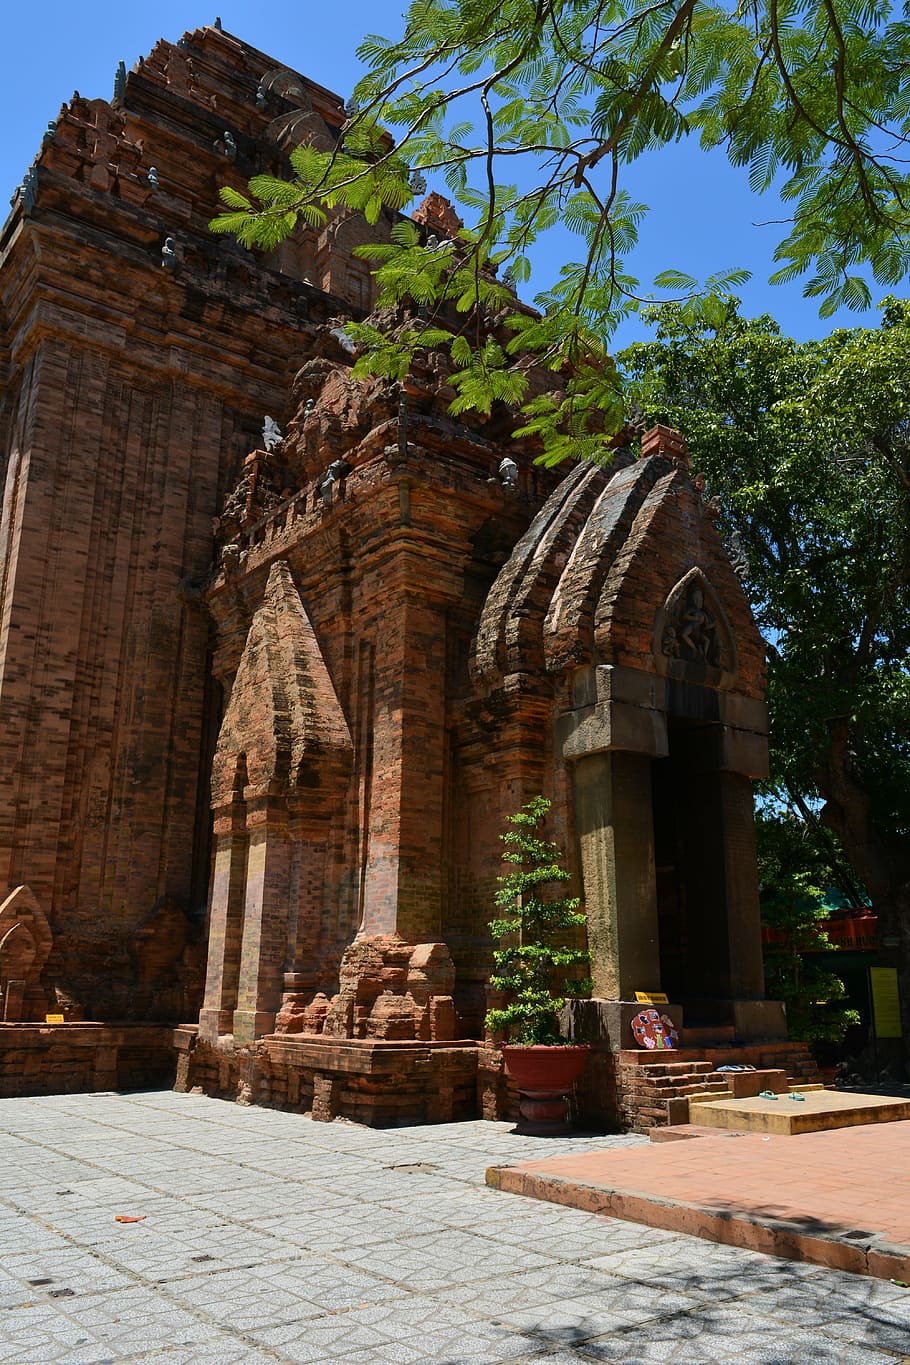 Điểm đến Đền chùa cổ là một cơ hội để khám phá các công trình kiến trúc đẹp và ý nghĩa tốt đẹp của đất nước. Hãy xem hình ảnh để cảm nhận được sự trang nghiêm, sức hút của ngôi đền chùa cổ.